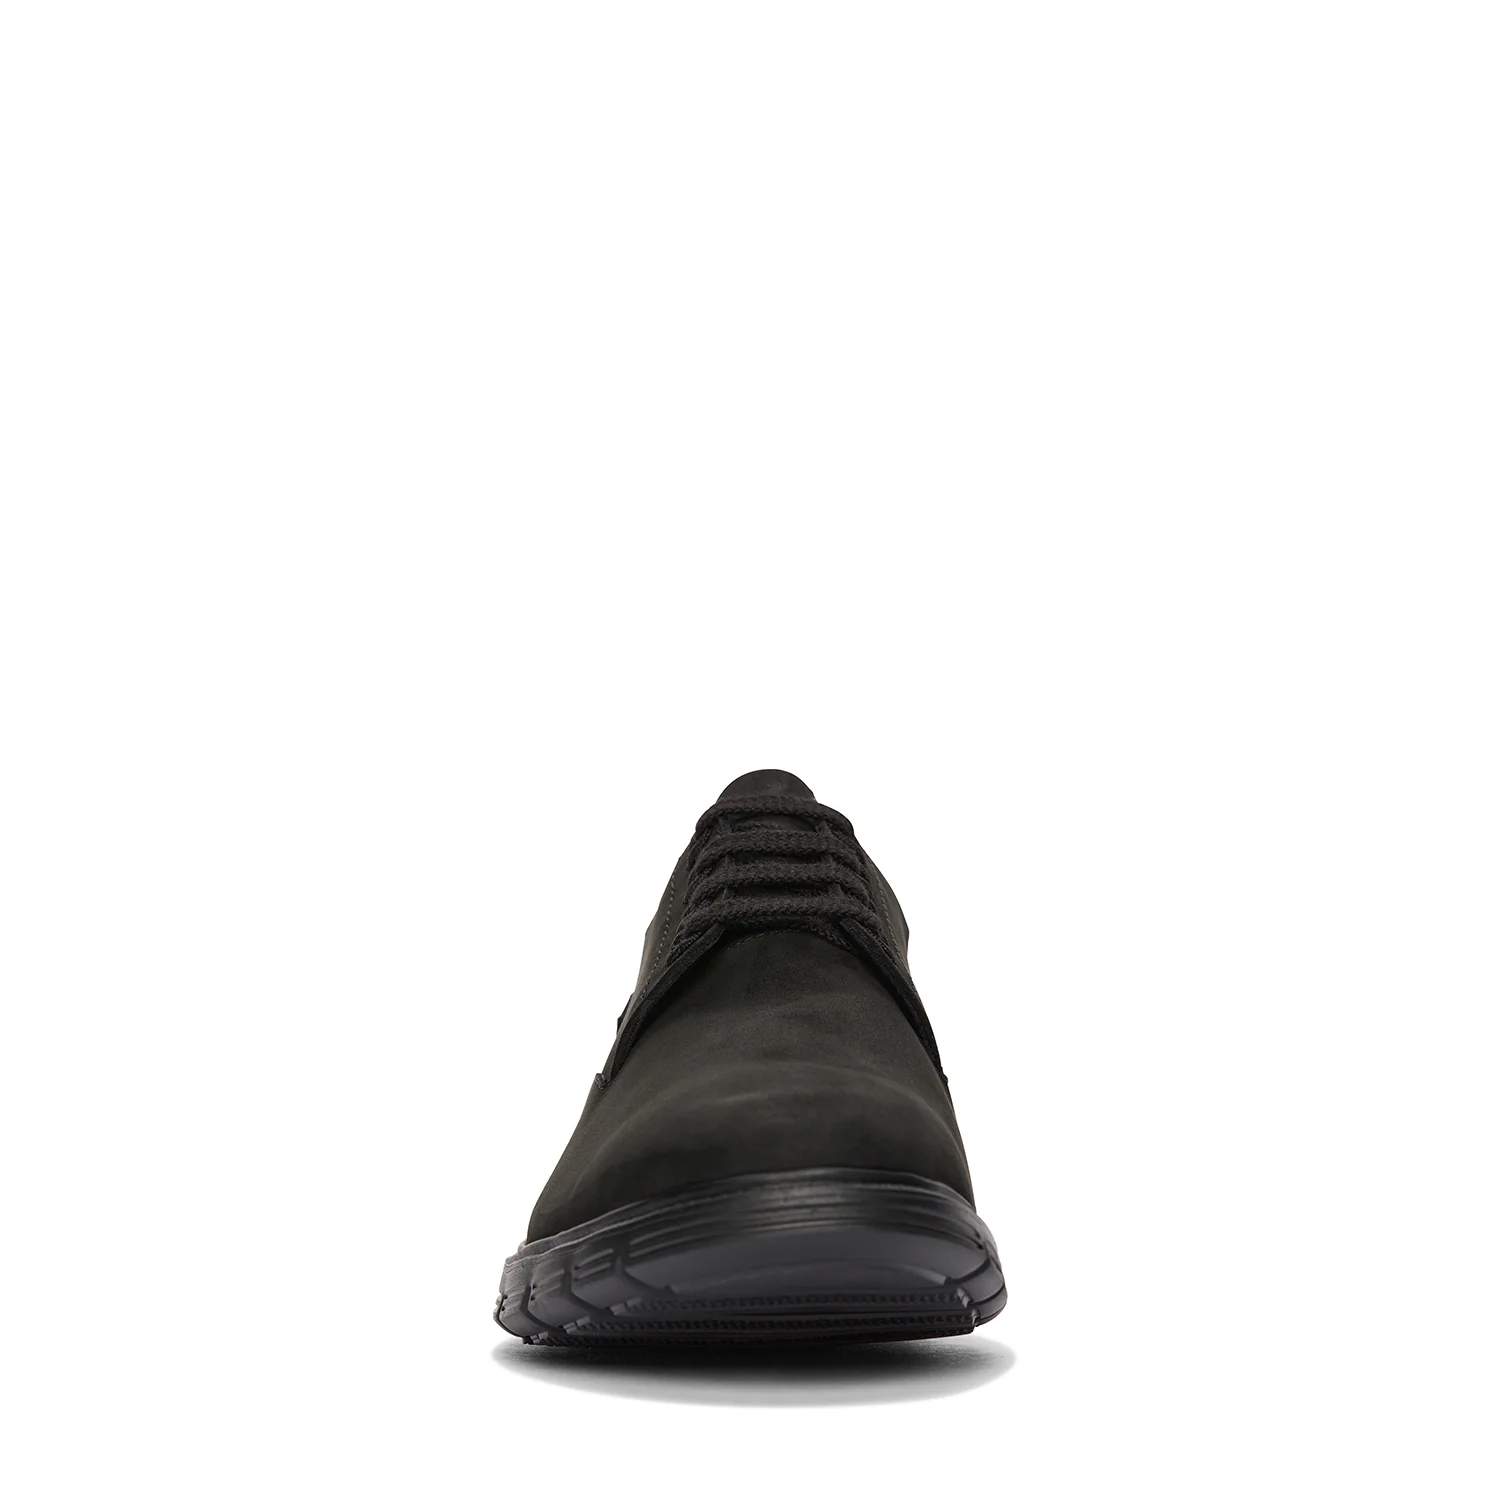 Мужские дерби Clarks, черные, цвет черный, размер 40 - фото 5